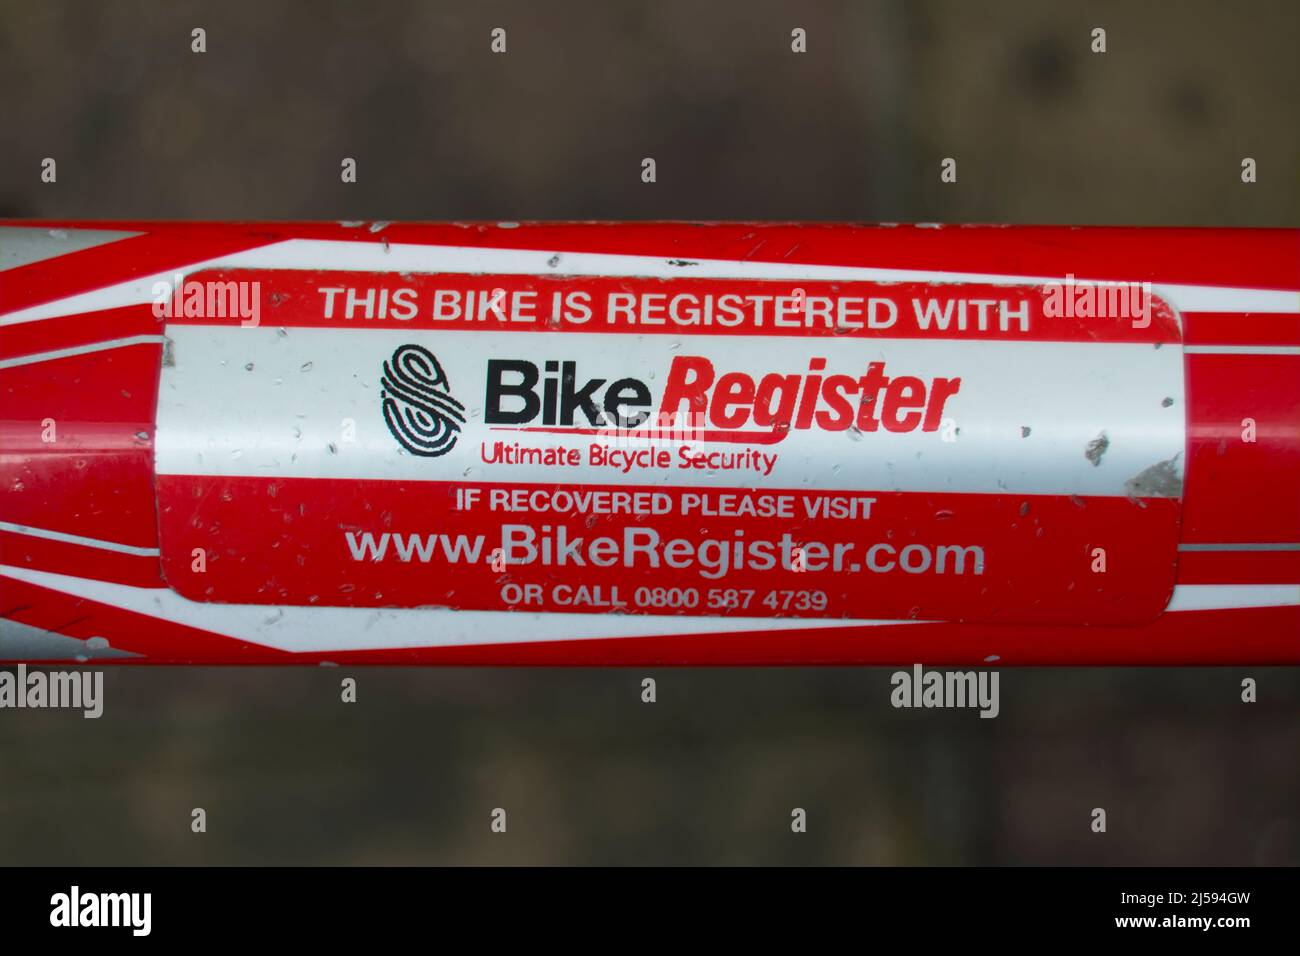 etiqueta de marco de ciclo que indica que el ciclo ha sido registrado en la compañía británica de registro de bicicletas, destinado a disuadir el robo de bicicletas y la reventa ilegal. Foto de stock